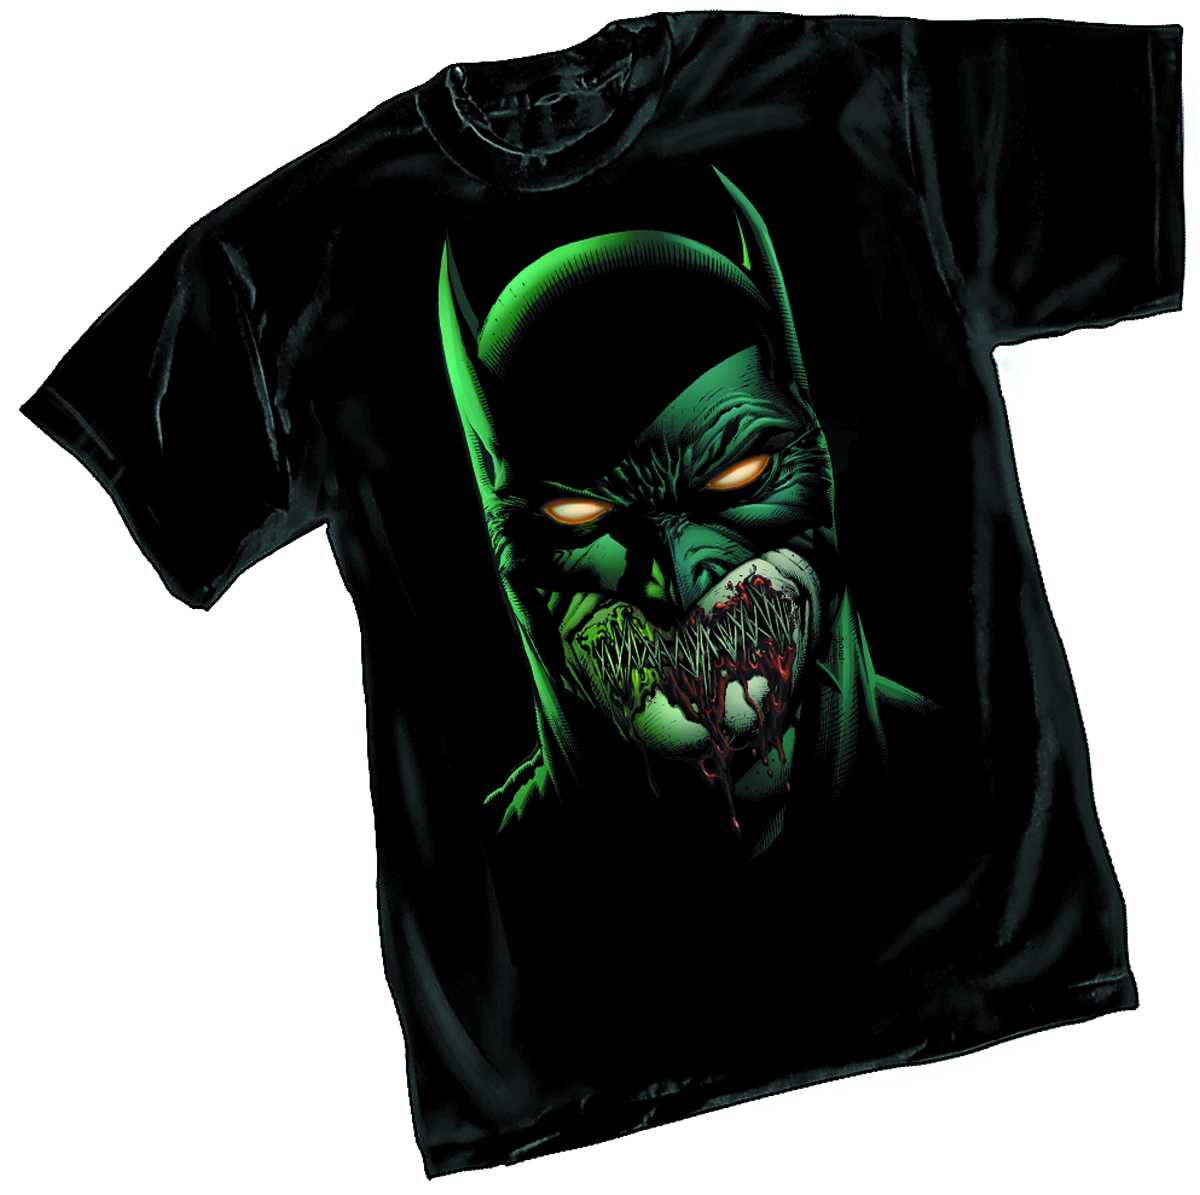 Batman t. Бэтмен т ширт. Batman t Shirt. Футболка Batman DC.